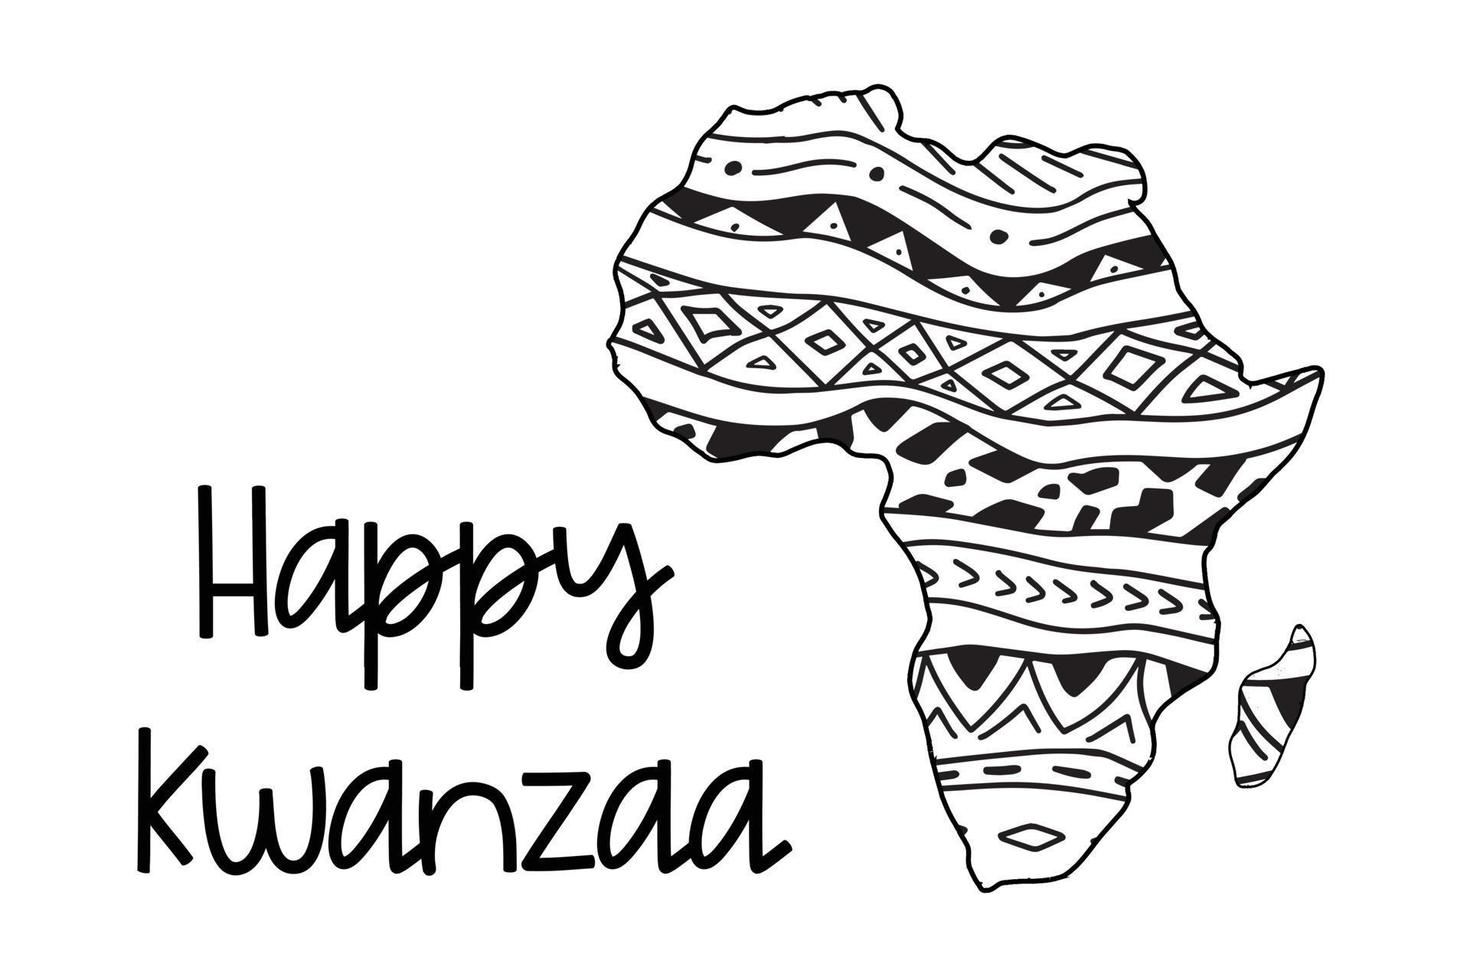 tarjeta de felicitación feliz kwanzaa. página para colorear ilustración vectorial de áfrica con patrón de ornamento de estilo africano tribal étnico. rayas horizontales en blanco y negro dibujadas a mano. mapa artístico simple vector